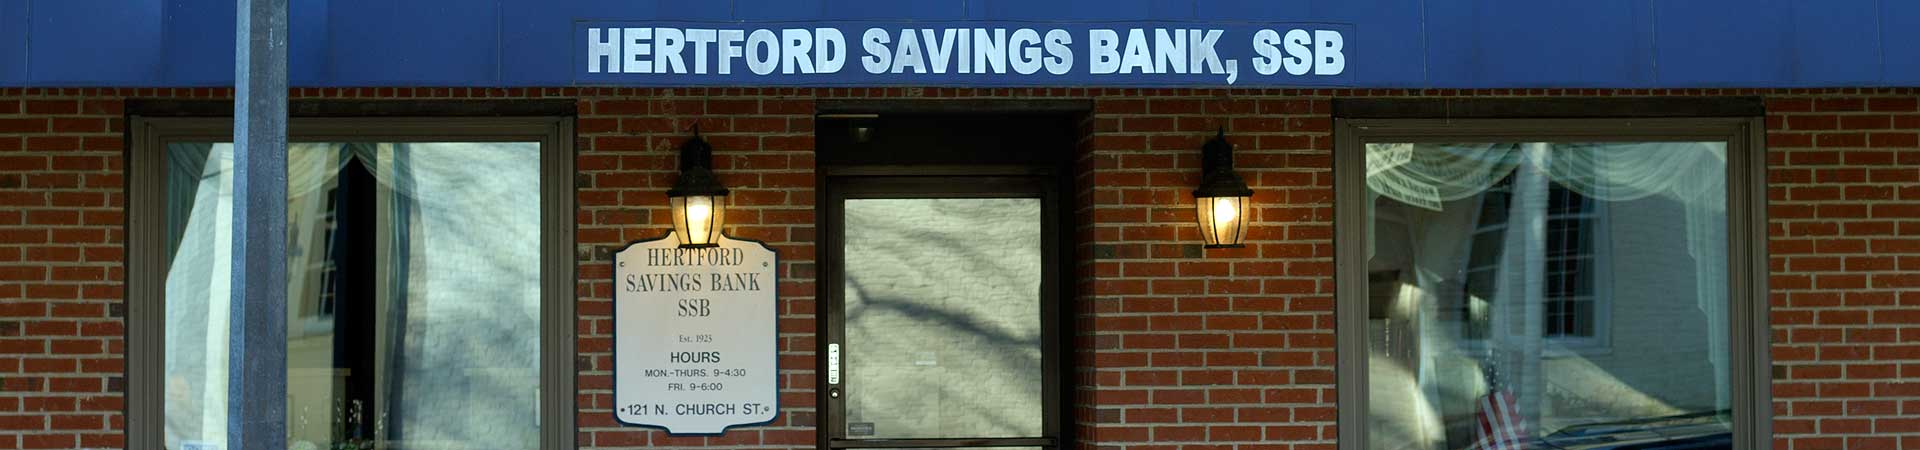 Hertford Savings Bank